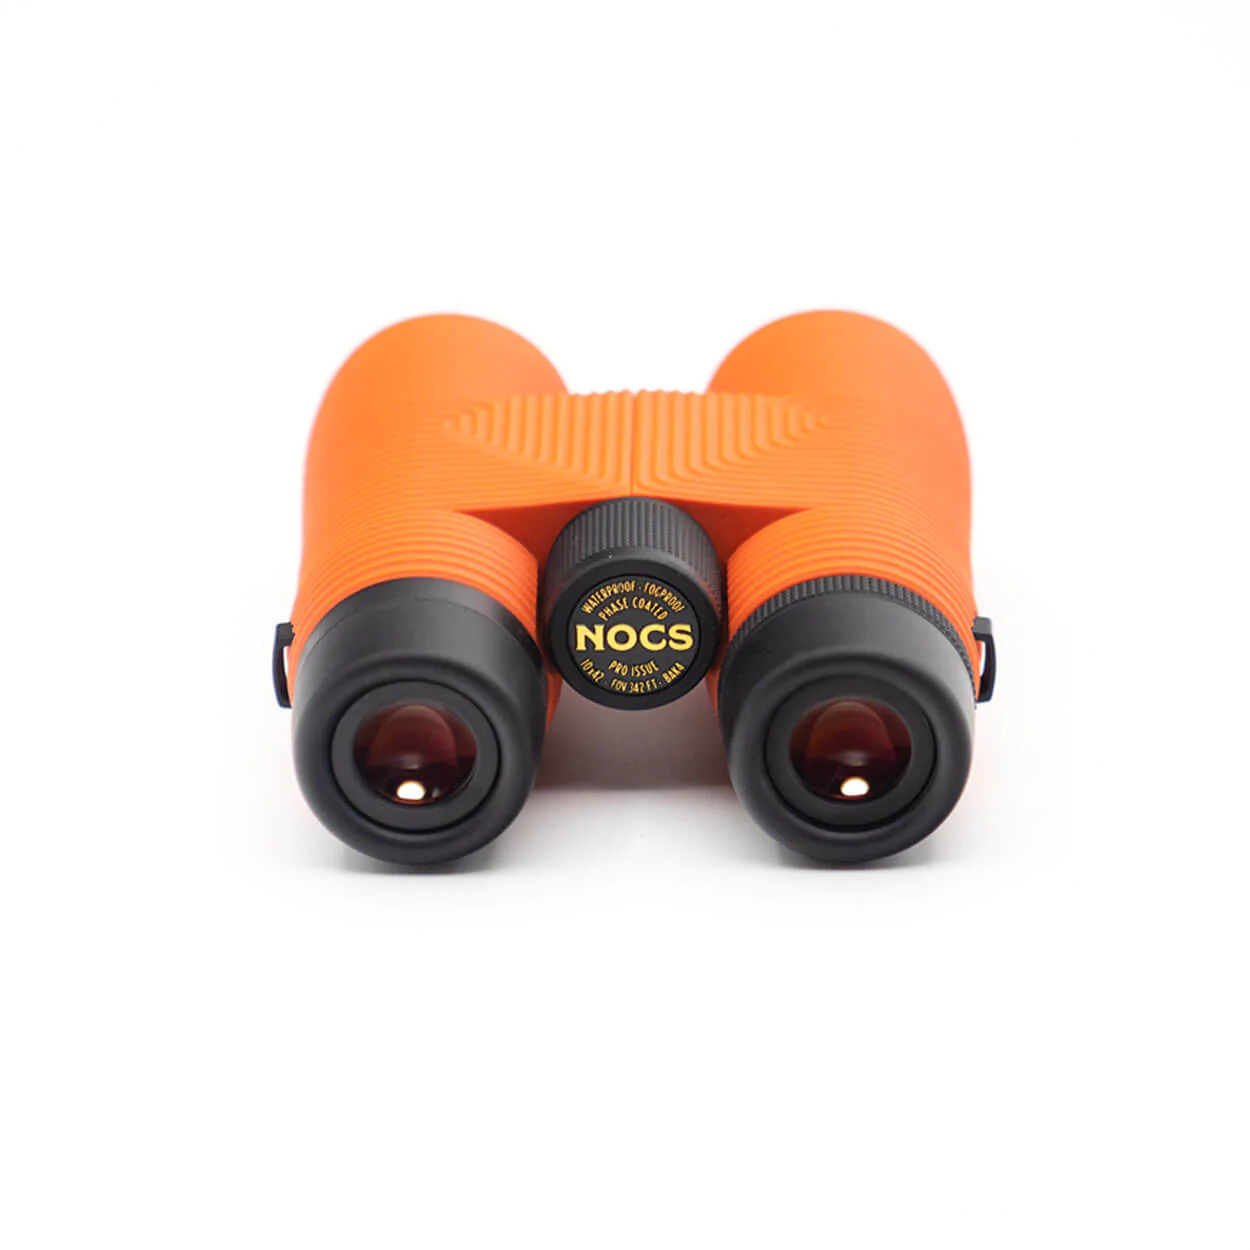 Nocs Pro Issue Waterproof Binoculars (Persimmon/Orange), 10x42